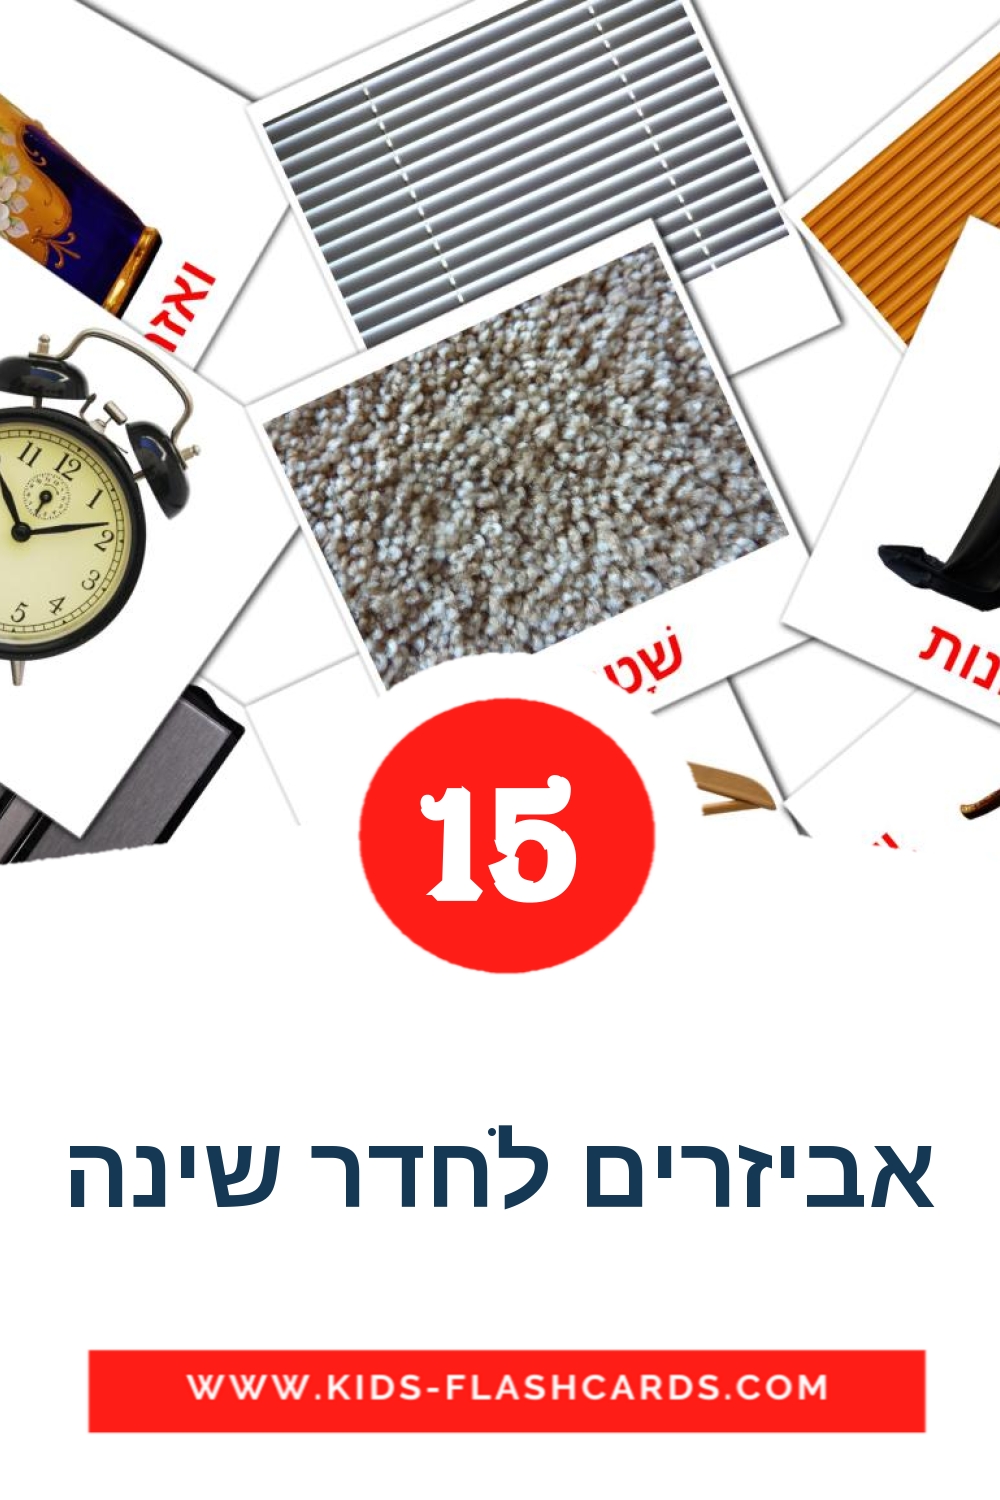 15 tarjetas didacticas de אביזרים לחדר שינה para el jardín de infancia en hebreo